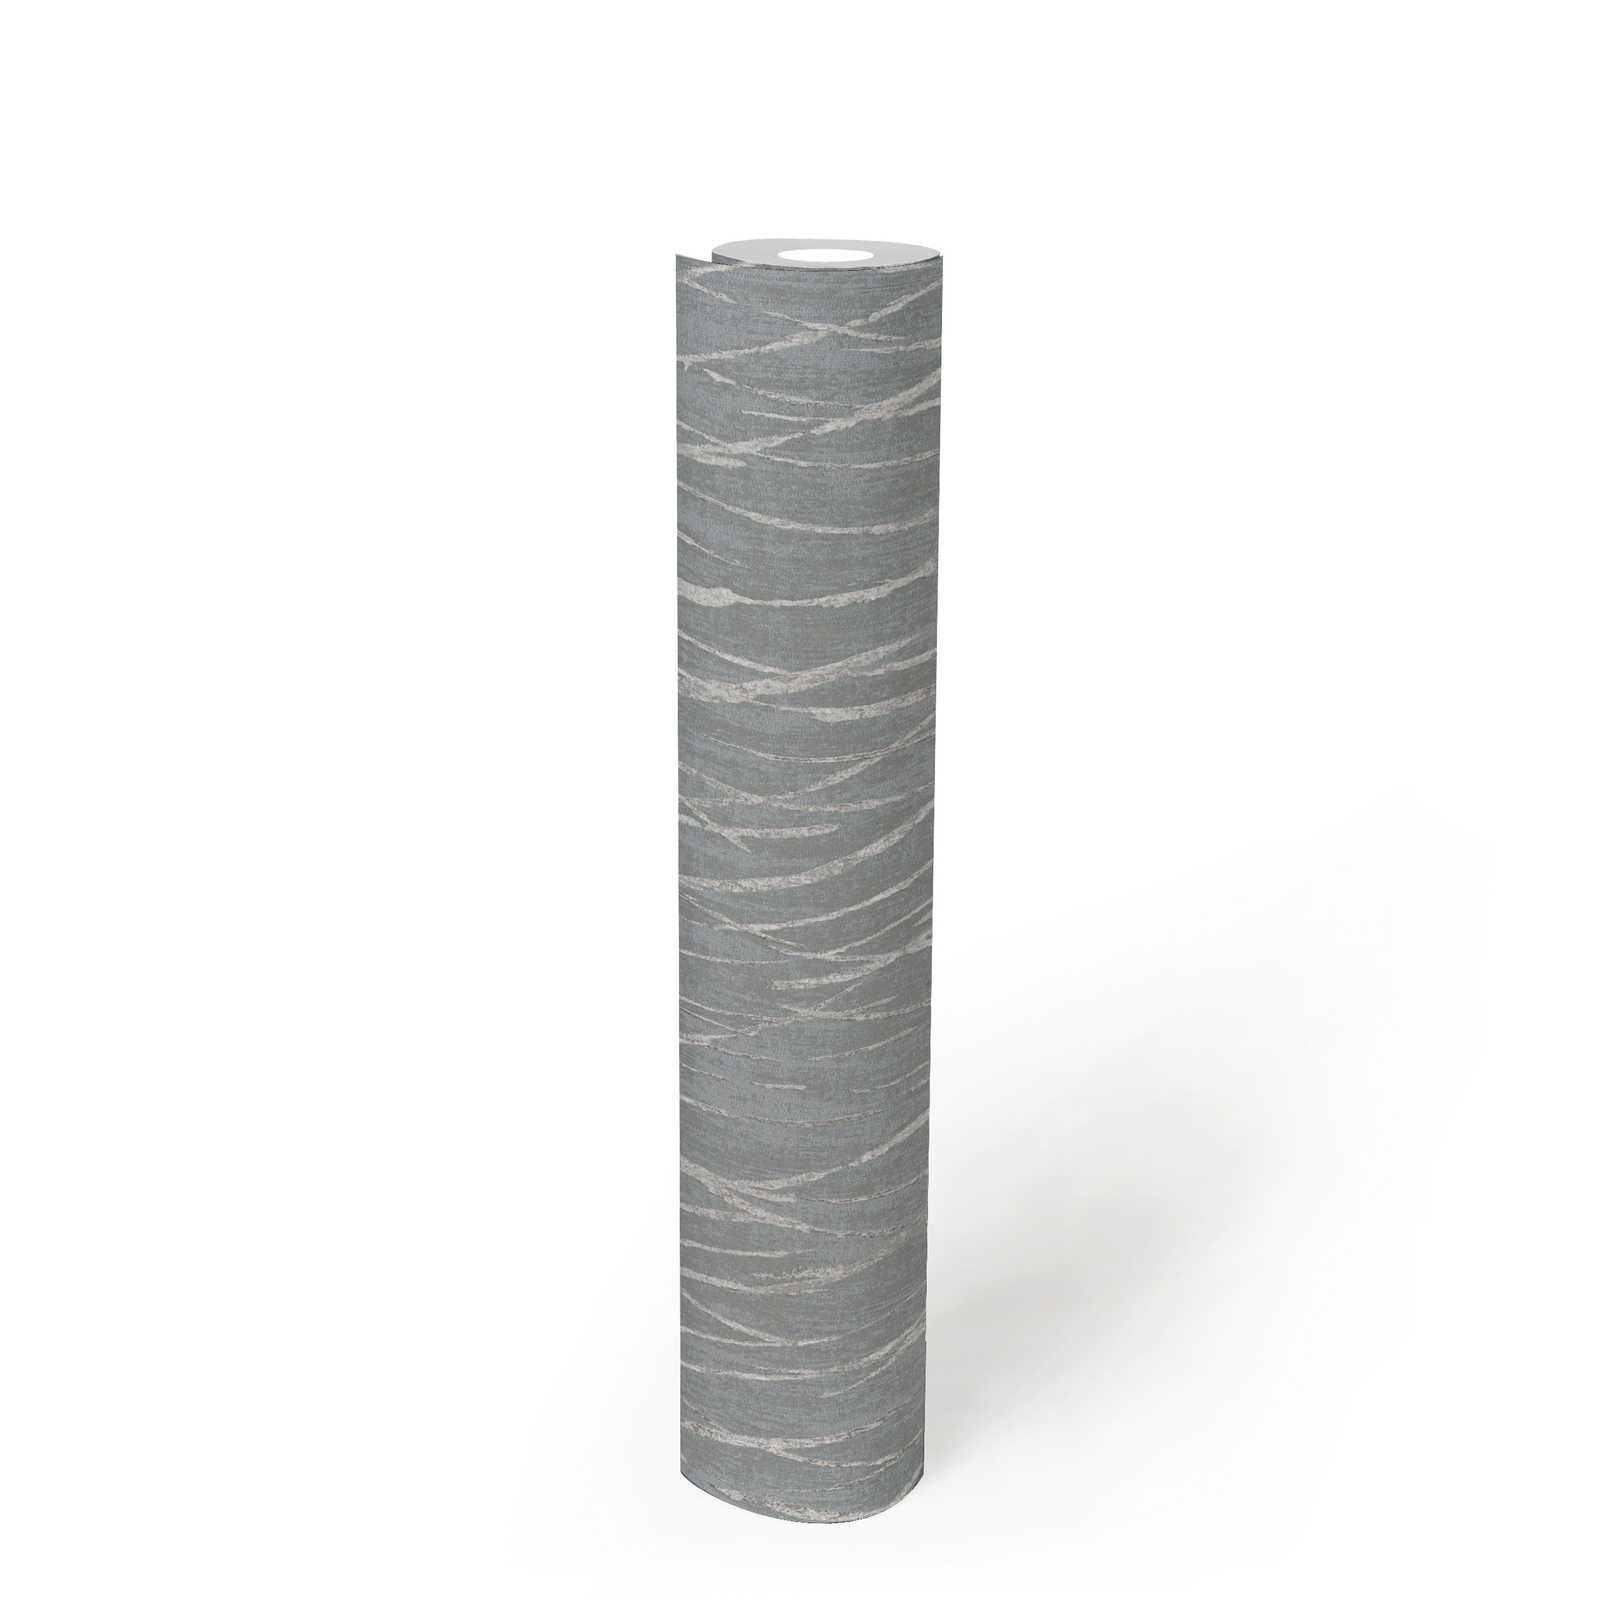             Vliesbehang met natuurmotief en metaaleffect - grijs, metallic
        